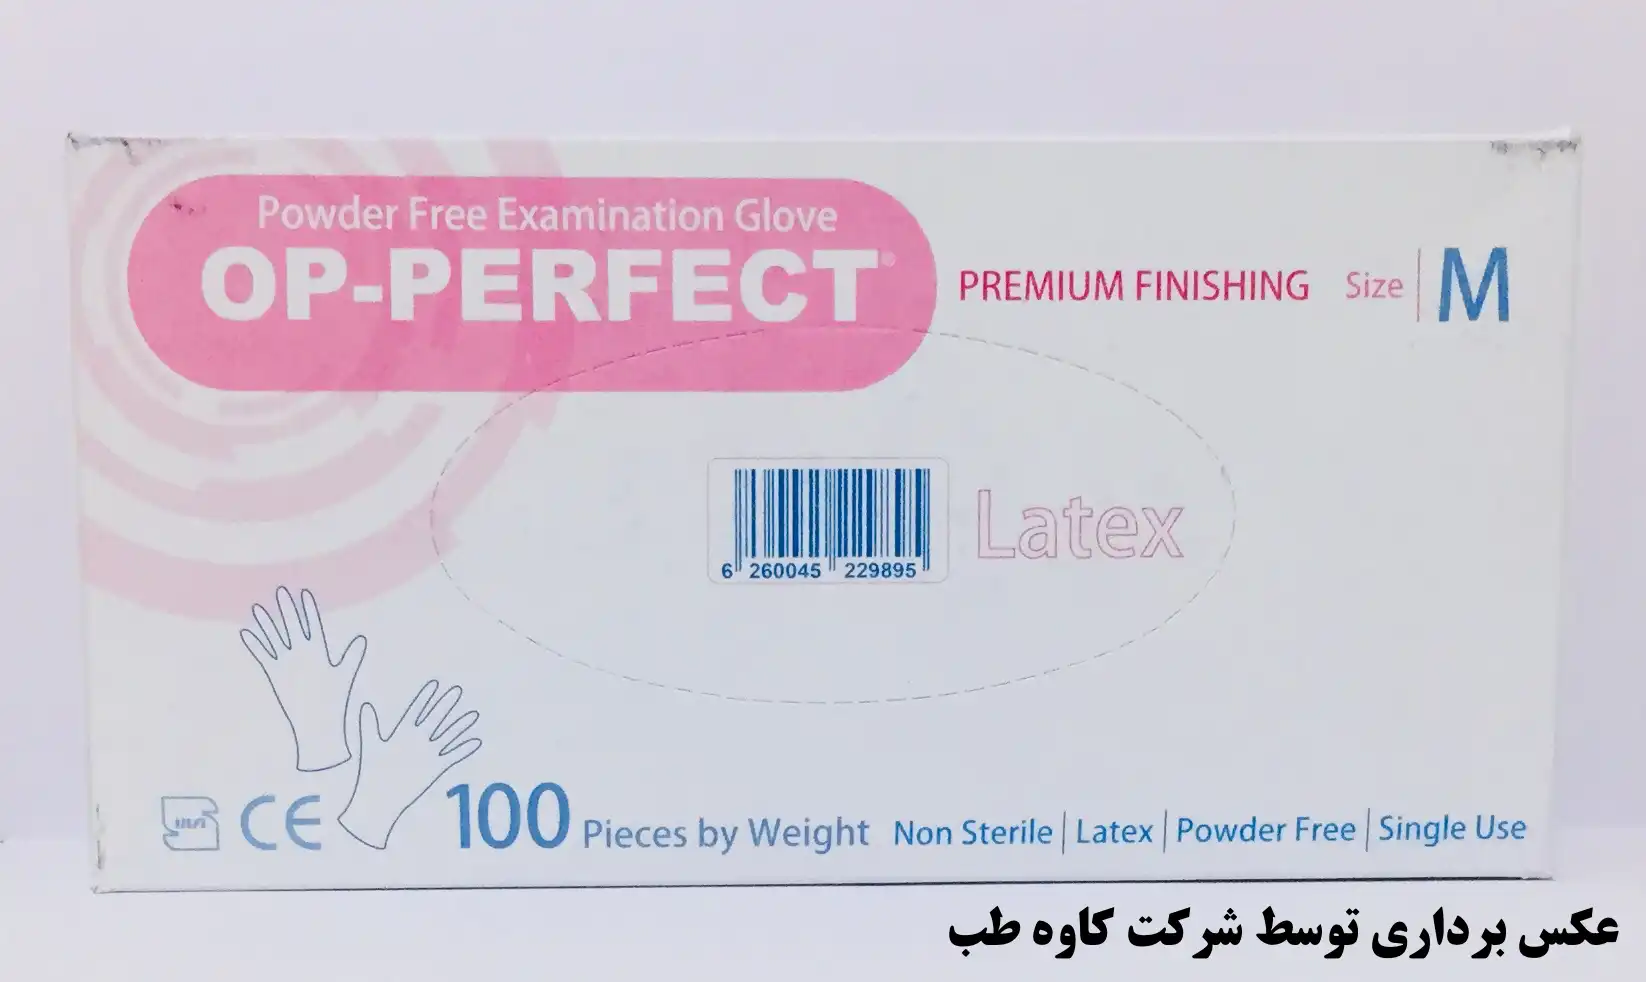  دستکش لاتکس 100 عددی اپی پرفکت مدیوم -  OP-Perfect Latex Glove Medium